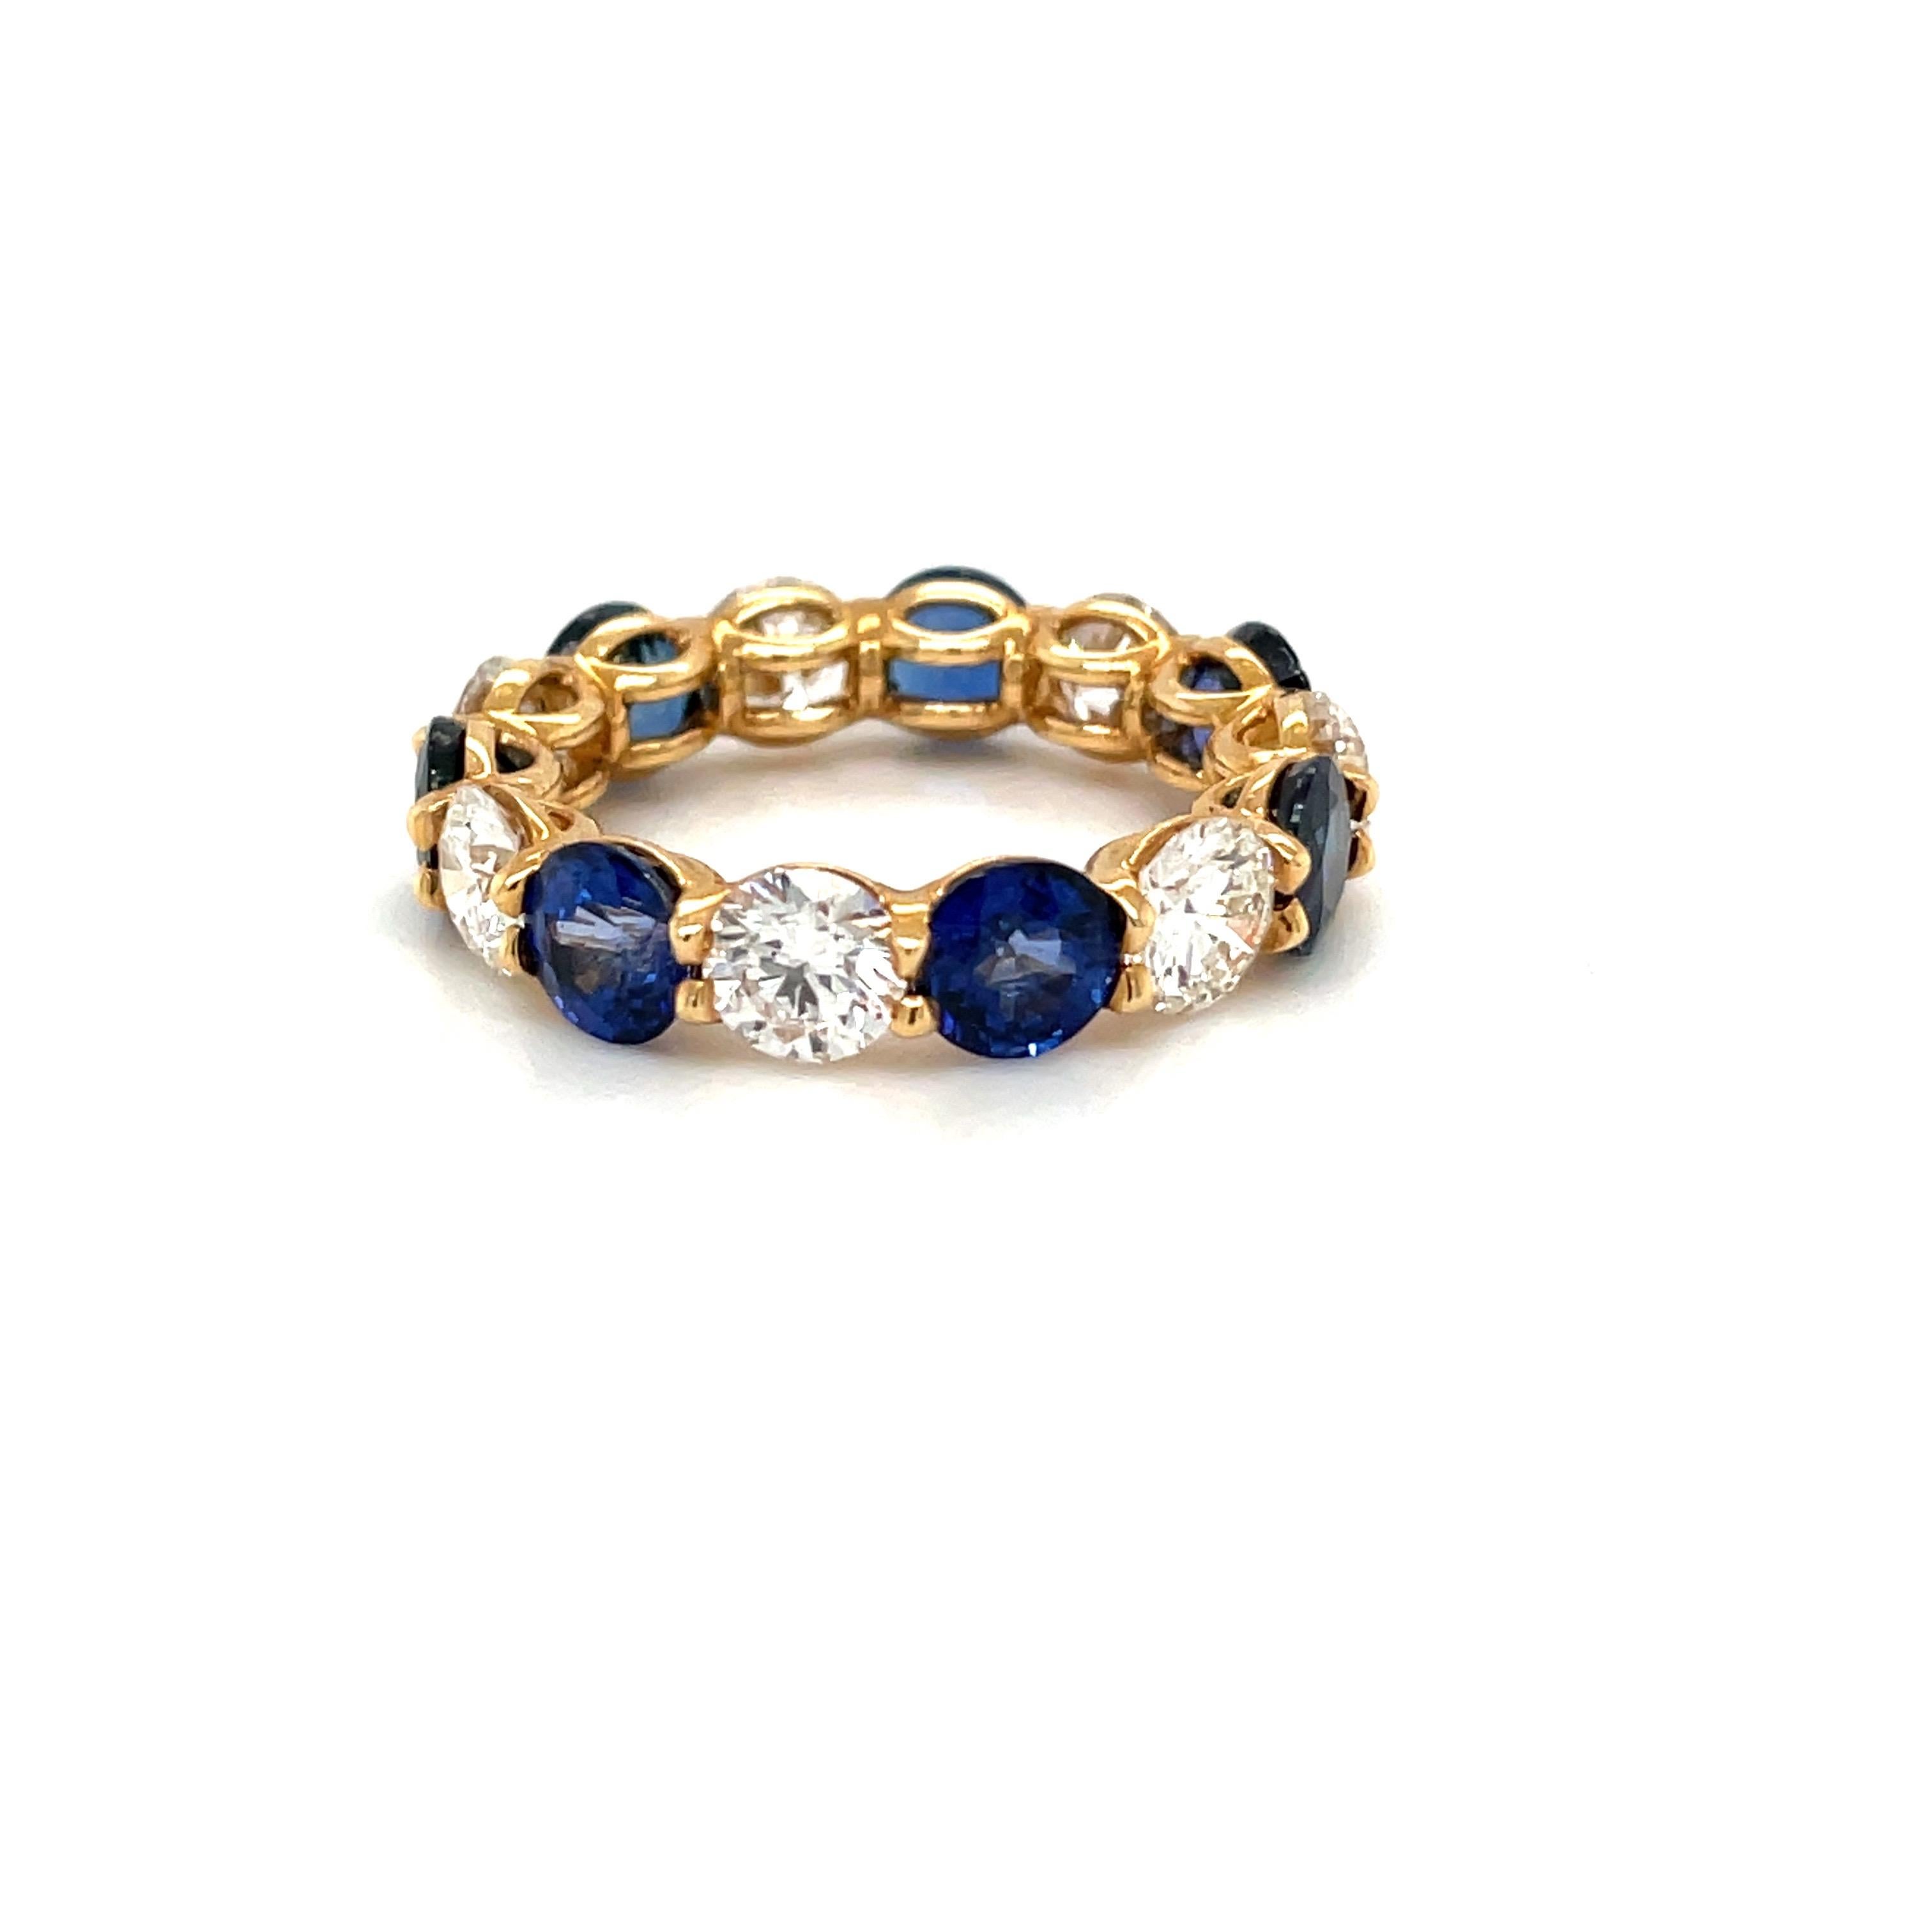 Runde blaue Saphire und Diamanten wechseln sich in einer handgefertigten Cellini-Fassung aus 18-karätigem Gelbgold mit geteilten Zacken ab.
Kundenspezifische Größen und Gewichte erhältlich. Wir bieten die gleichen Ringe auch in Rubin und Smaragd an.